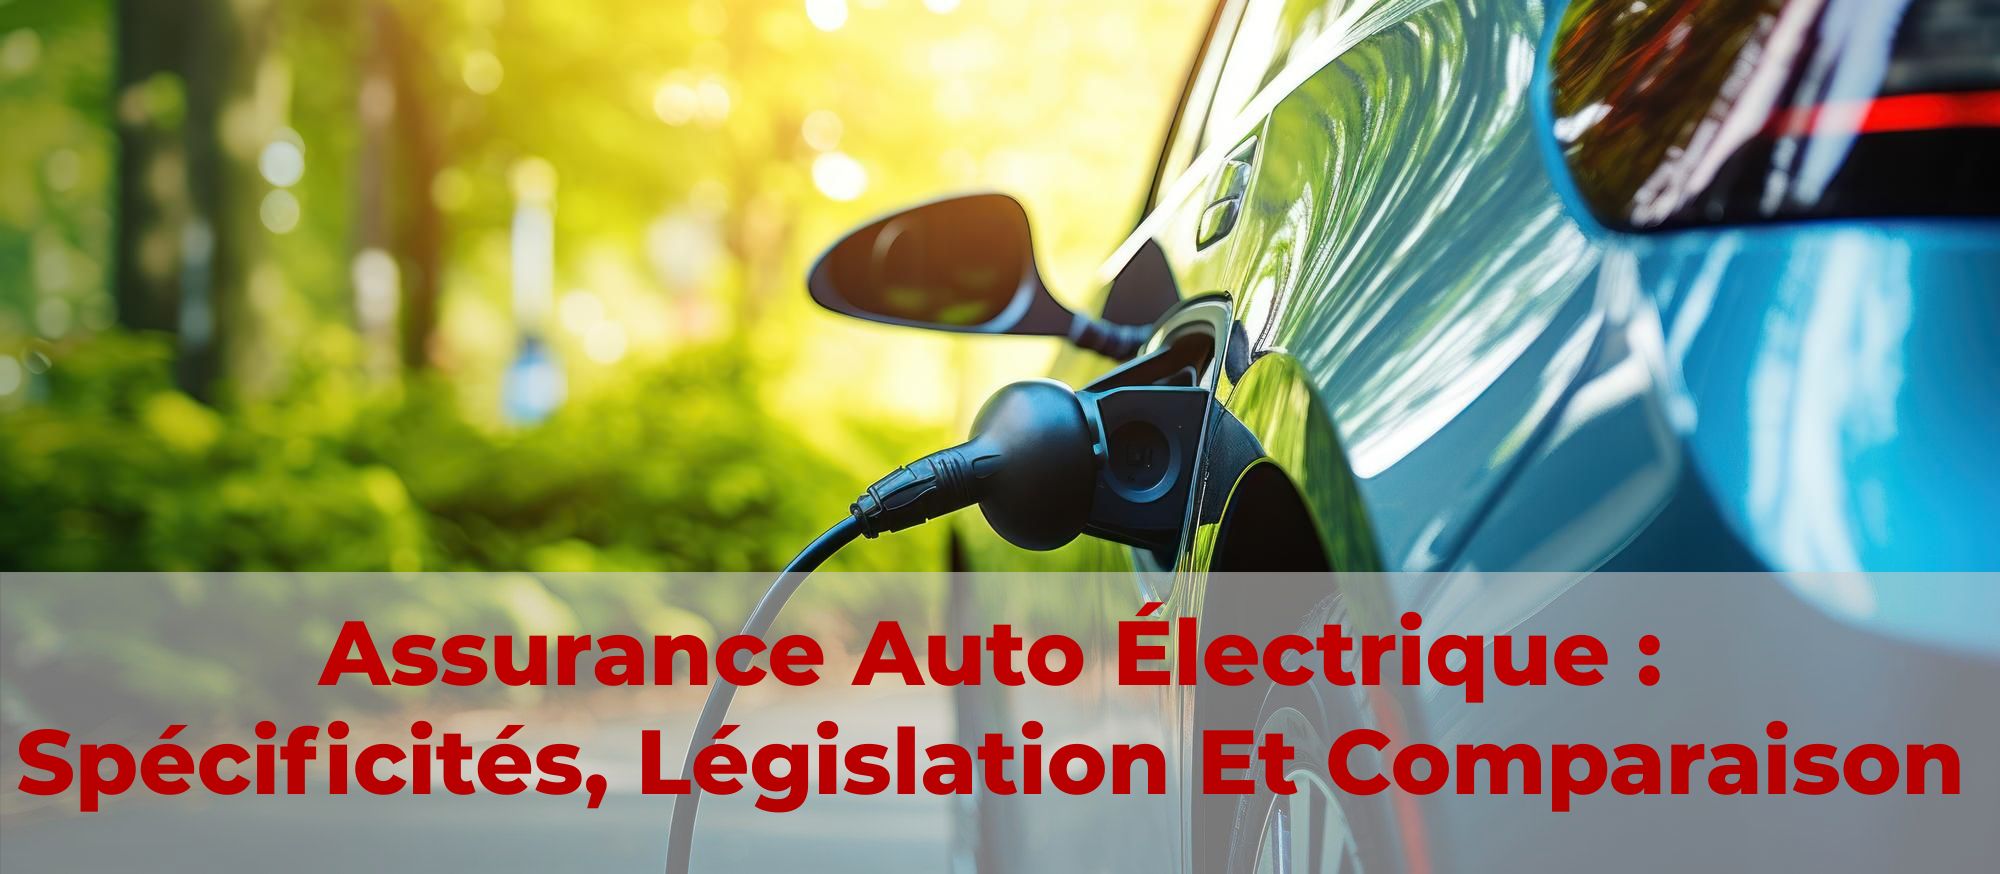 Assurance auto électrique : spécificités, législation et comparaison